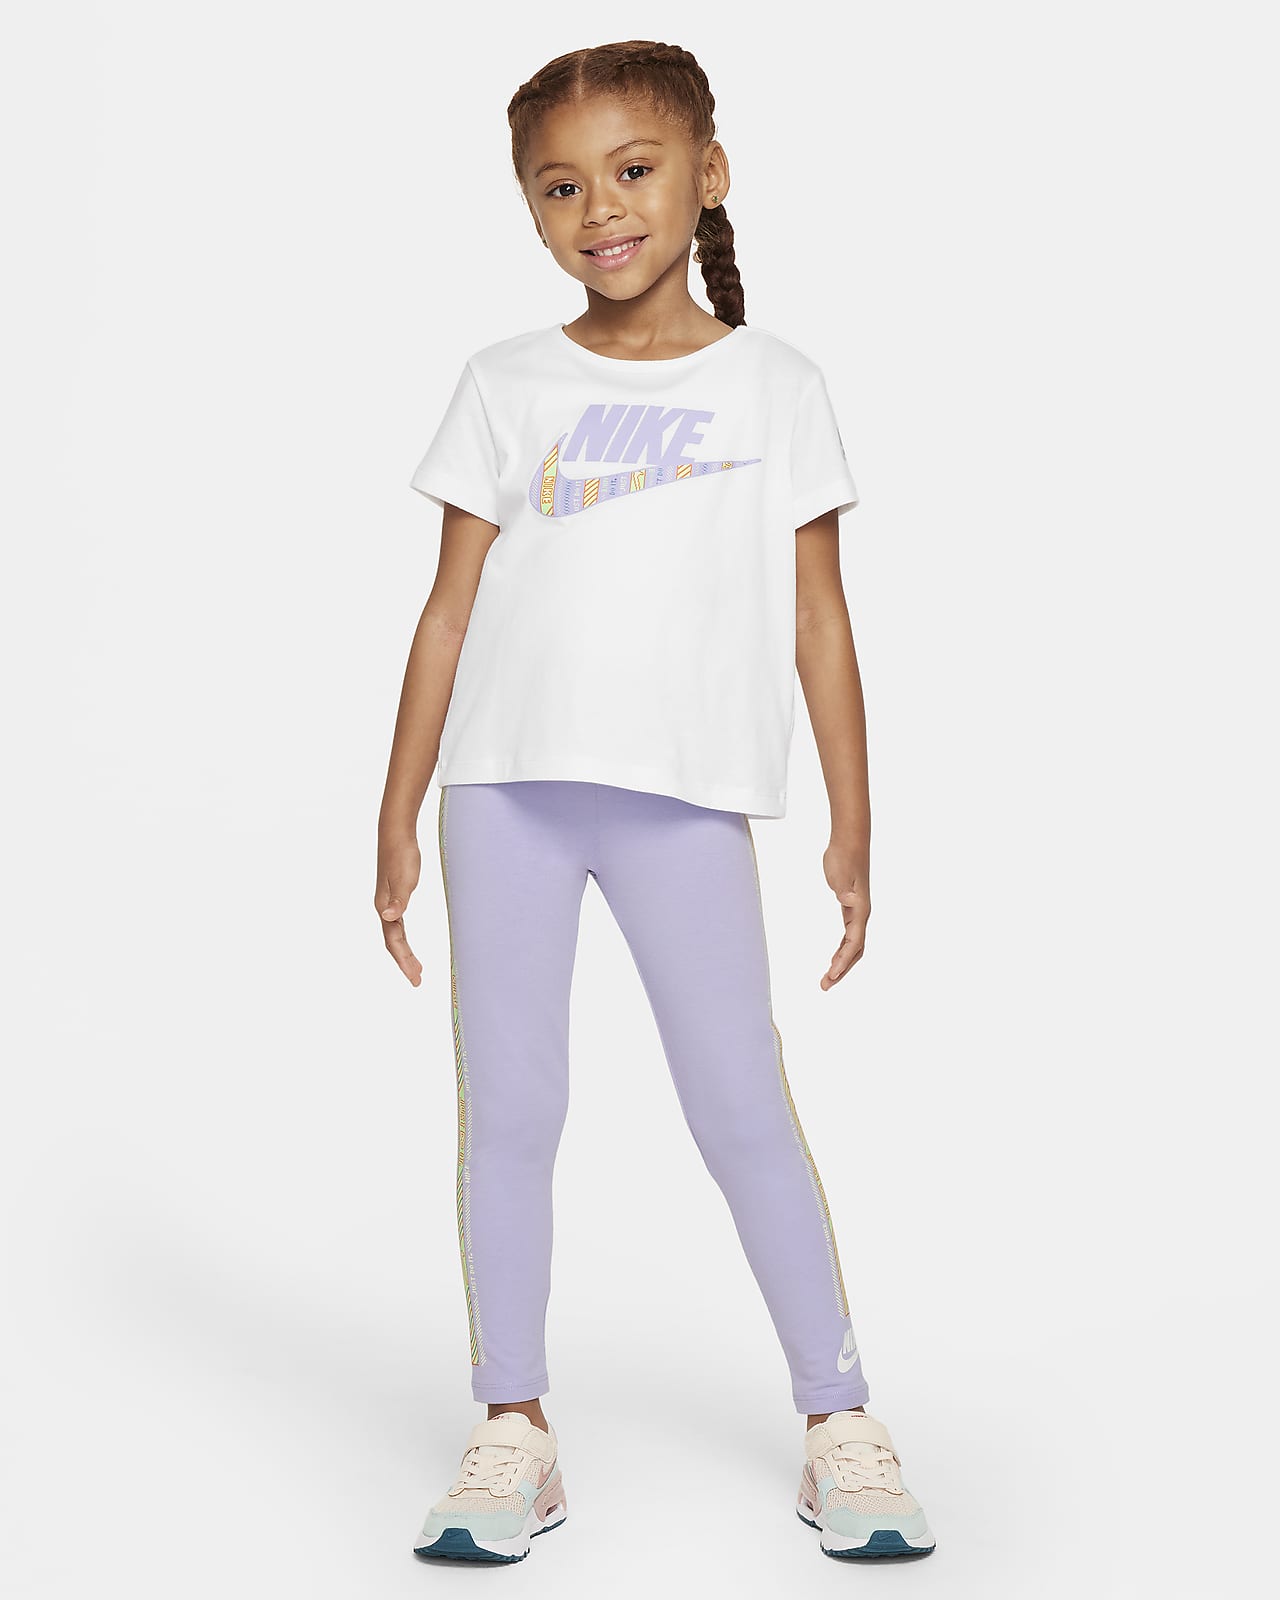 Ensemble avec legging Nike Happy Camper pour enfant